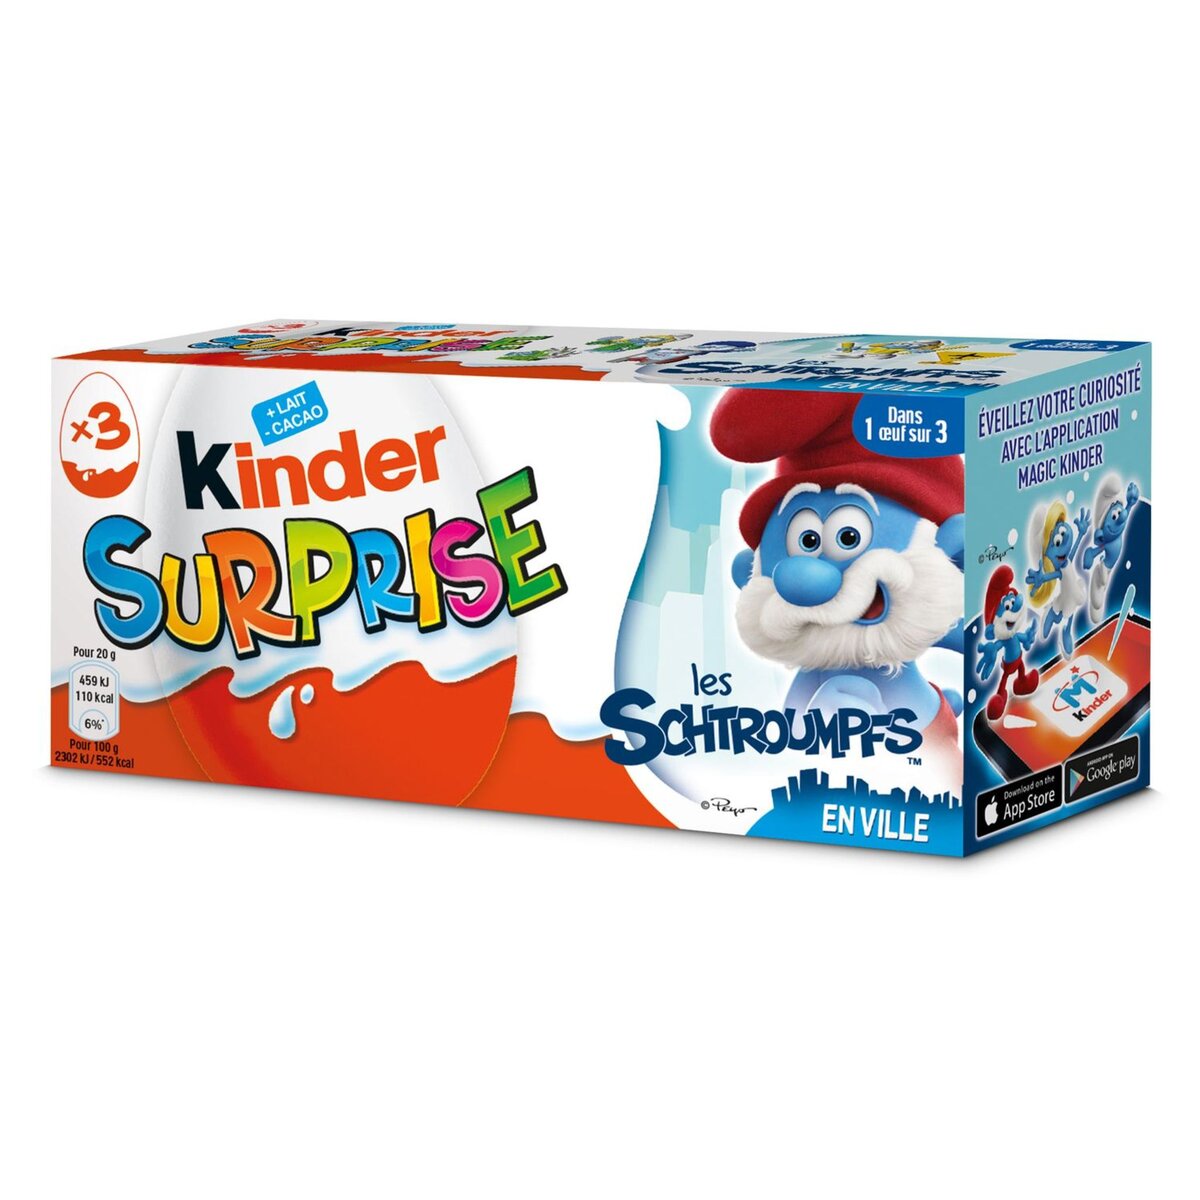 KINDER Kinder surprise unisexe x3 -60g